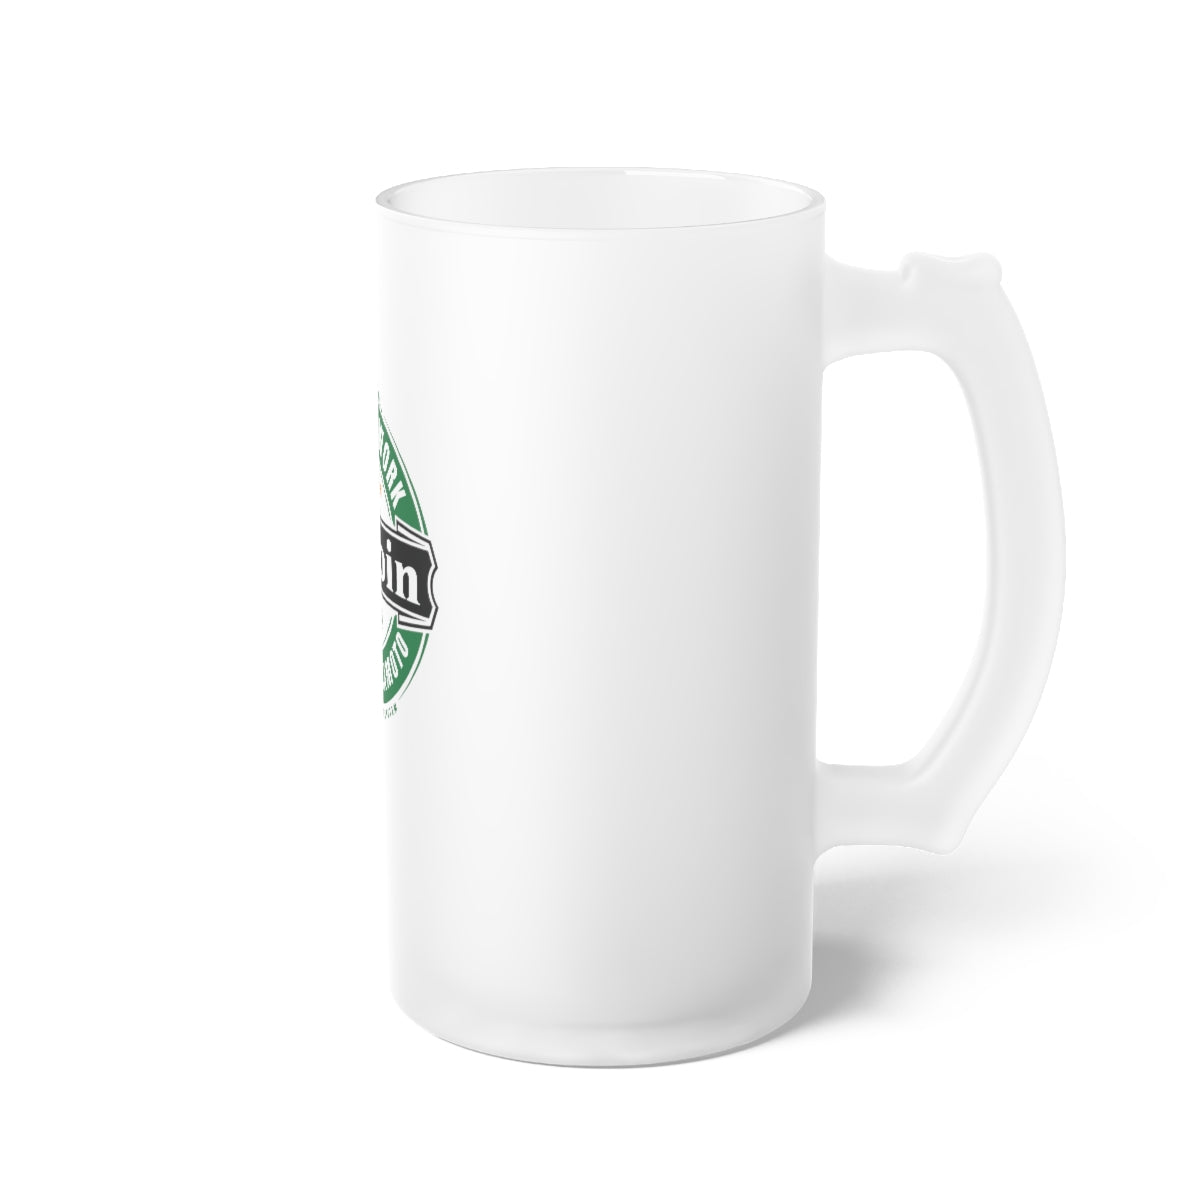 BTC Emblem Frosted Glass Beer Mug